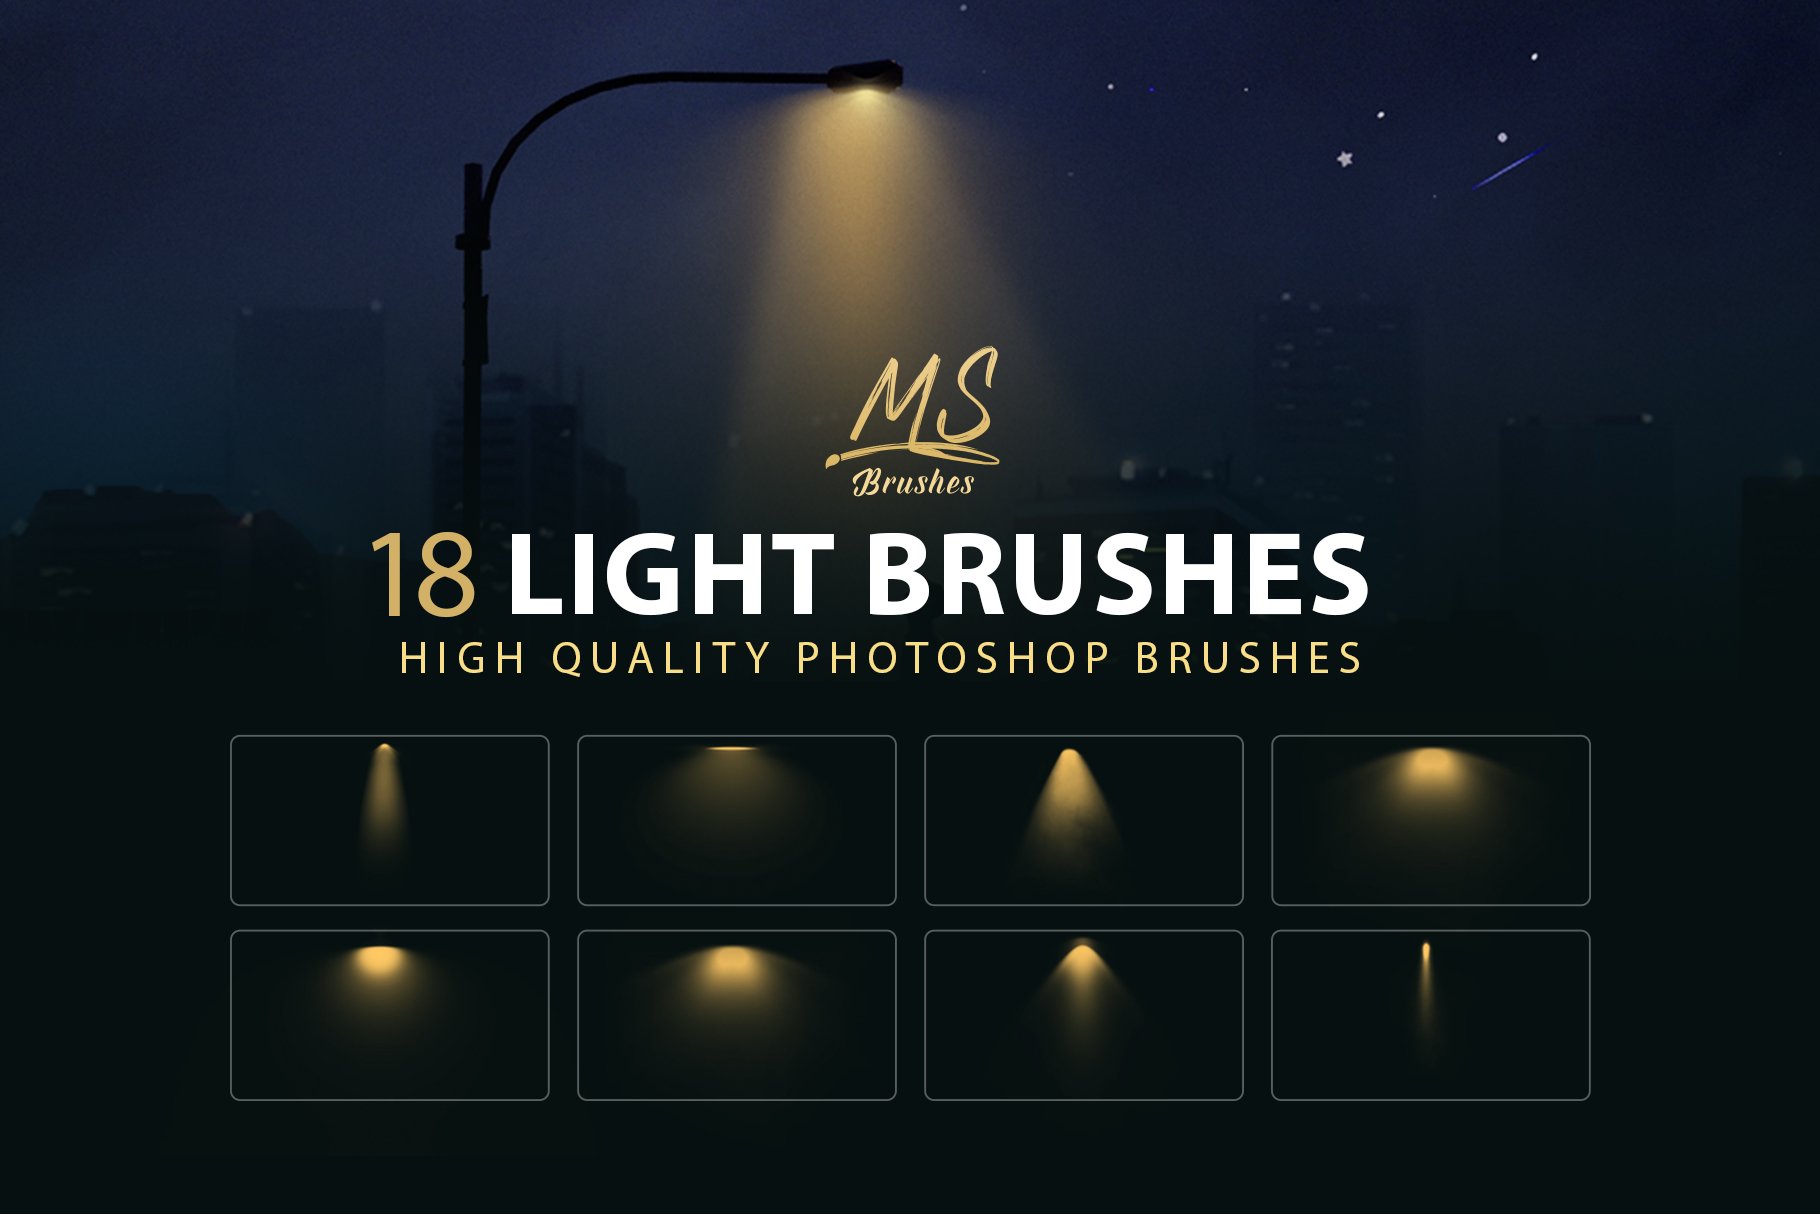 Light Photoshop Brushescover image.